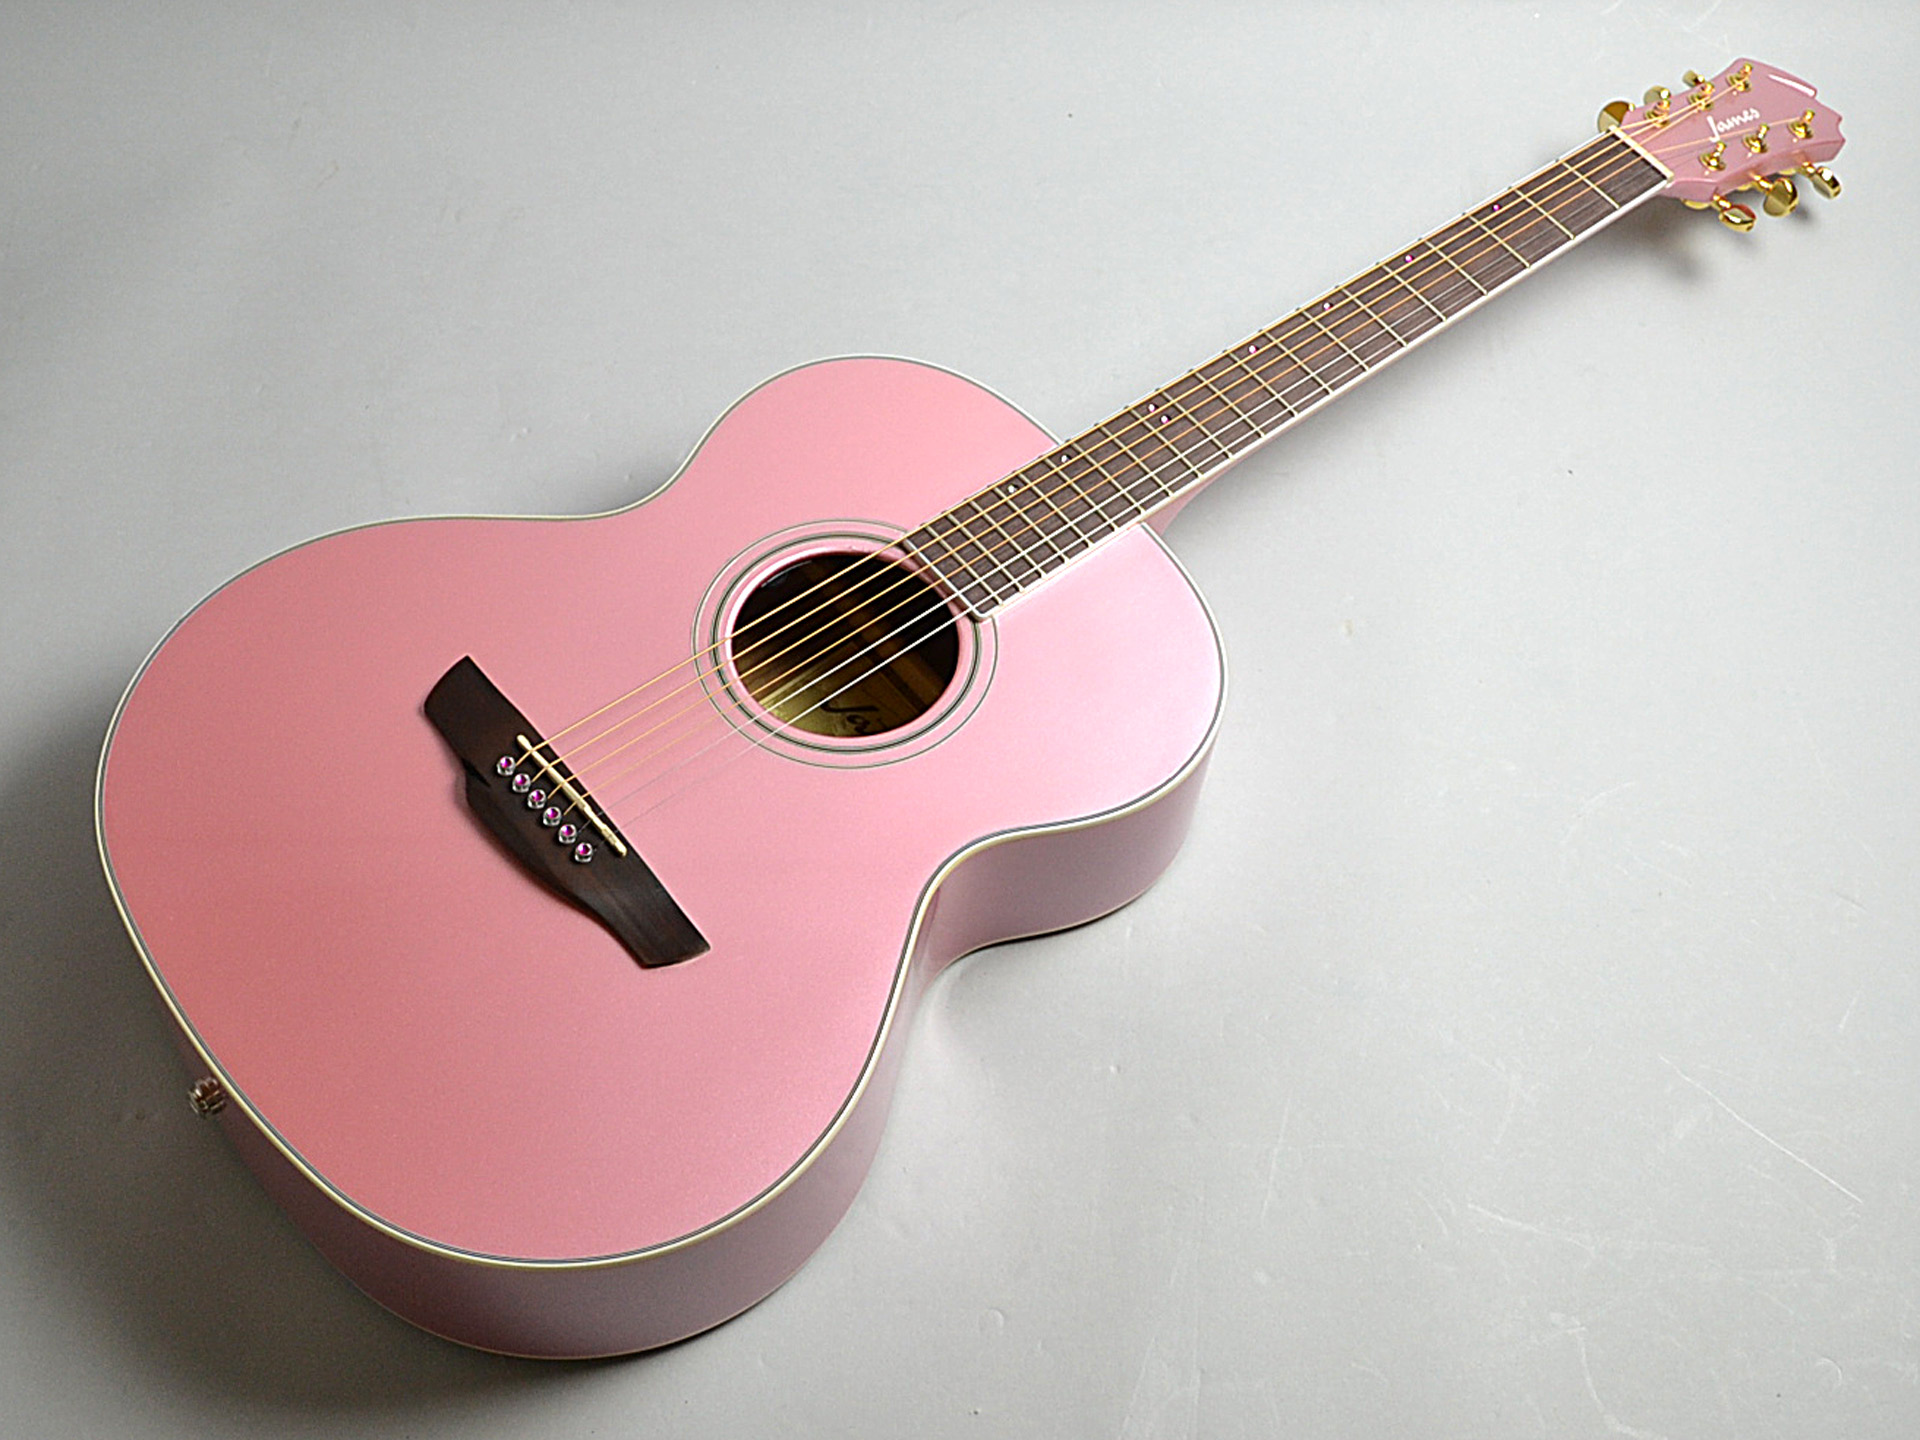 アコースティックギター James J 500aスペシャルカラーモデル入荷 アコギ女子必見 島村楽器 くずはモール店